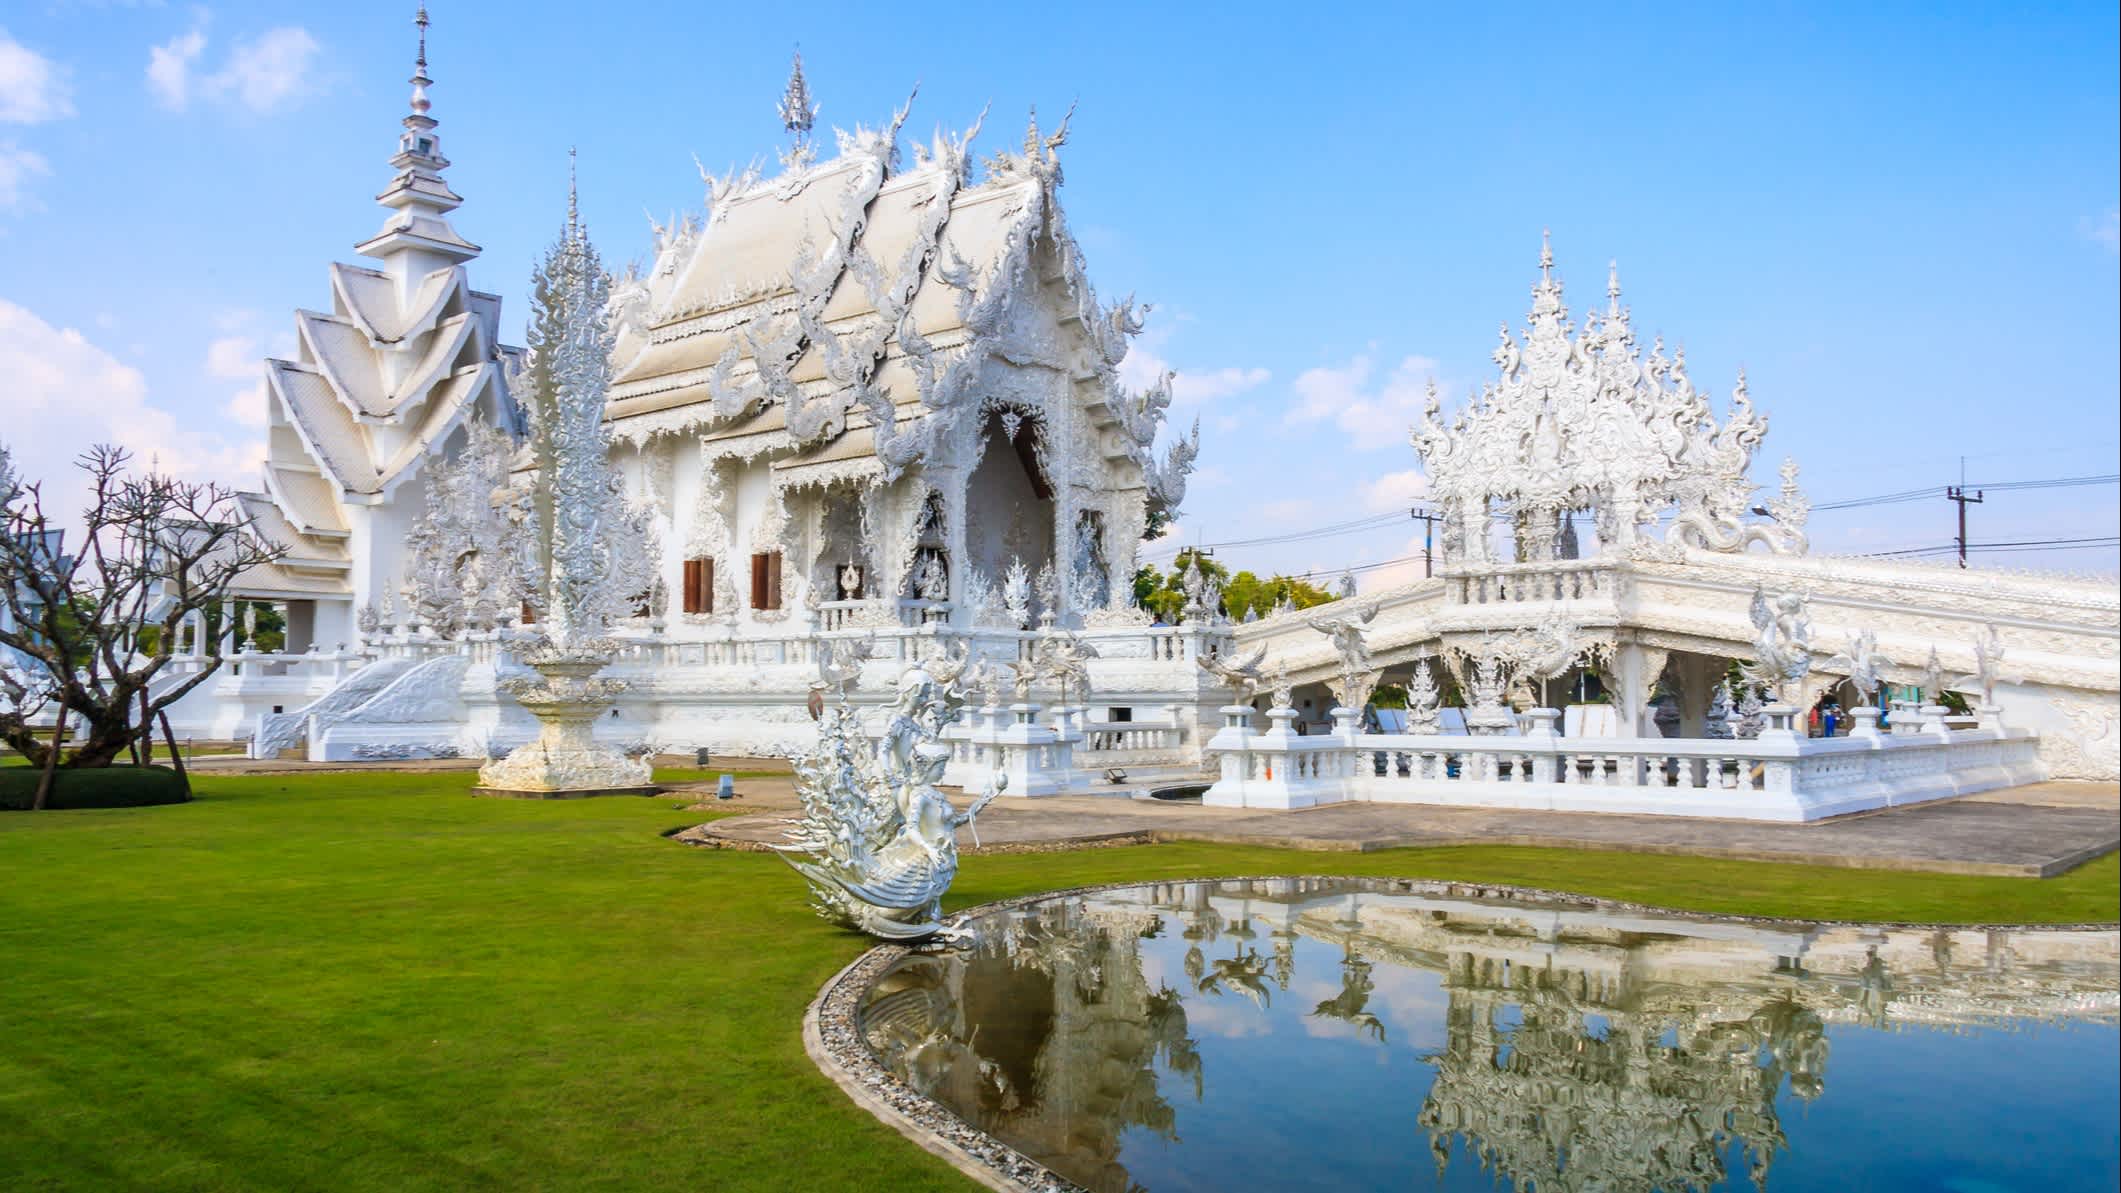 Wat Rong Khun, auf Englisch bekannt als The White Temple. Es handelt sich um eine Kunstausstellung in Privatbesitz im Stil eines buddhistischen Tempels in Thailand.